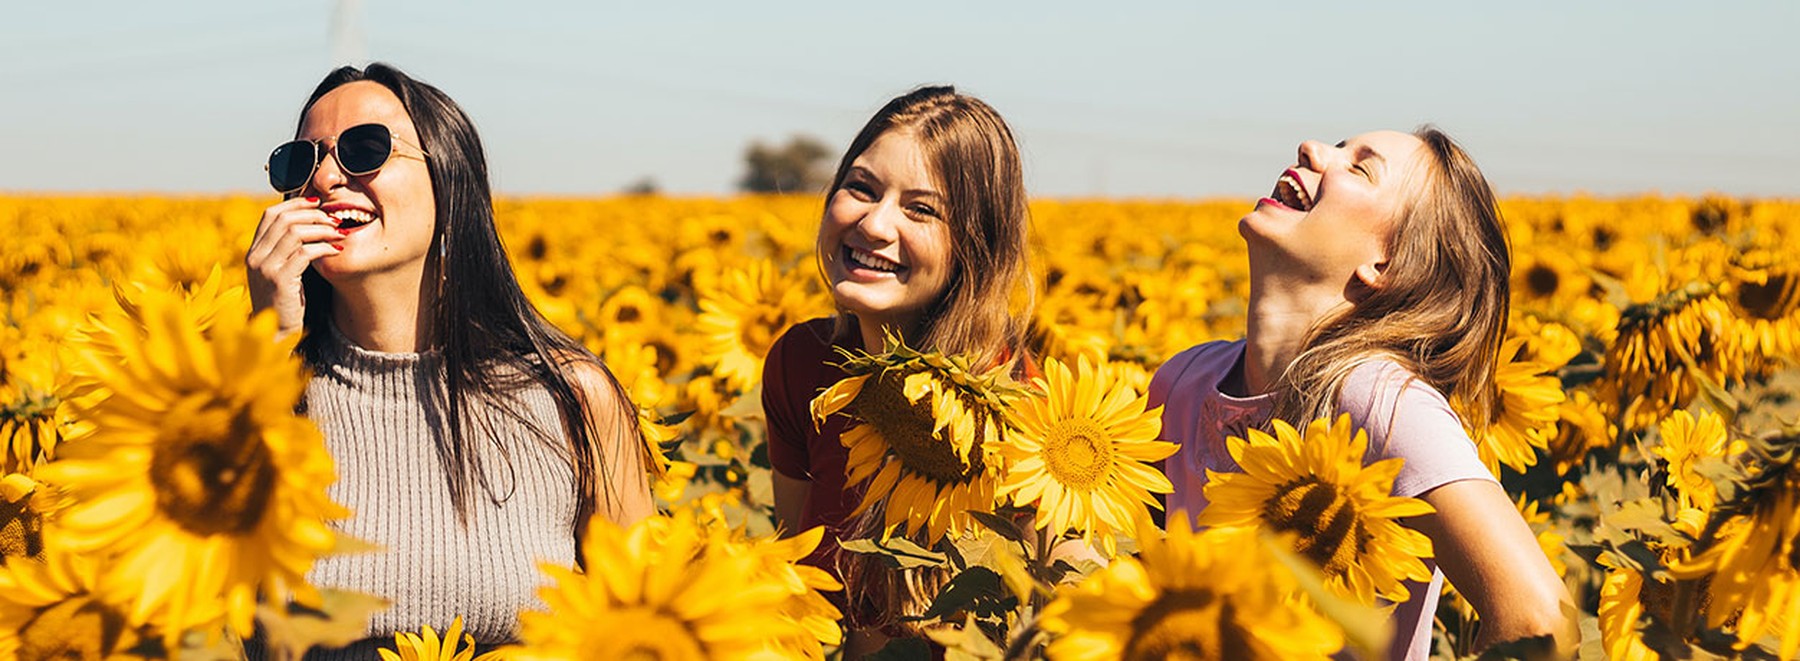 Frauen im Sonnenblumenfeld